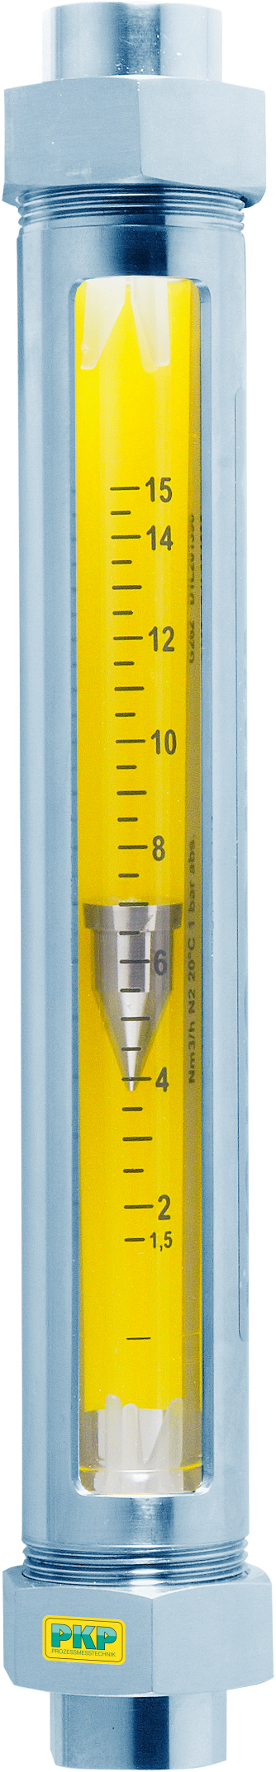 DS12 üvegcsöves áramlásmérő